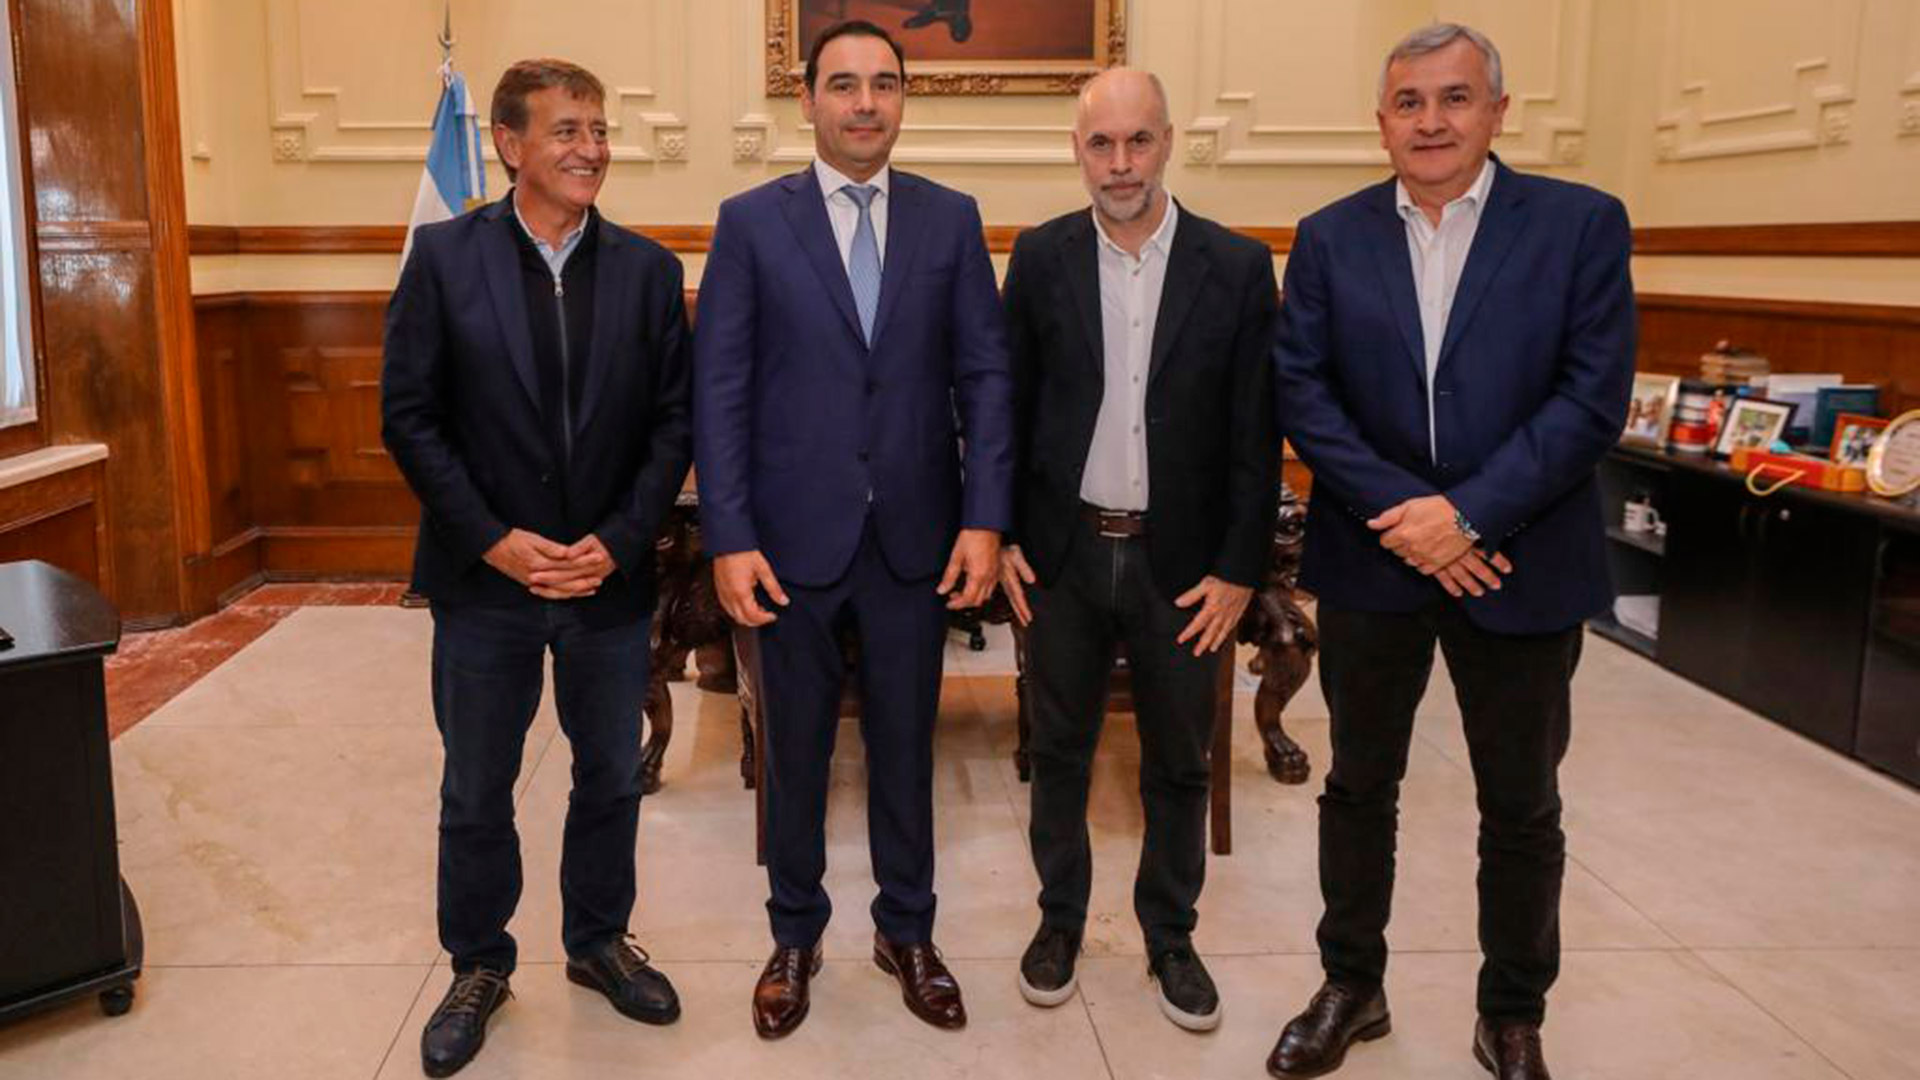 ¿Una foto dedicada a Macri? Cumbre en Corrientes de Rodolfo Suárez, Gustavo Valdés, Horacio Rodríguez Larreta y Gerardo Morales